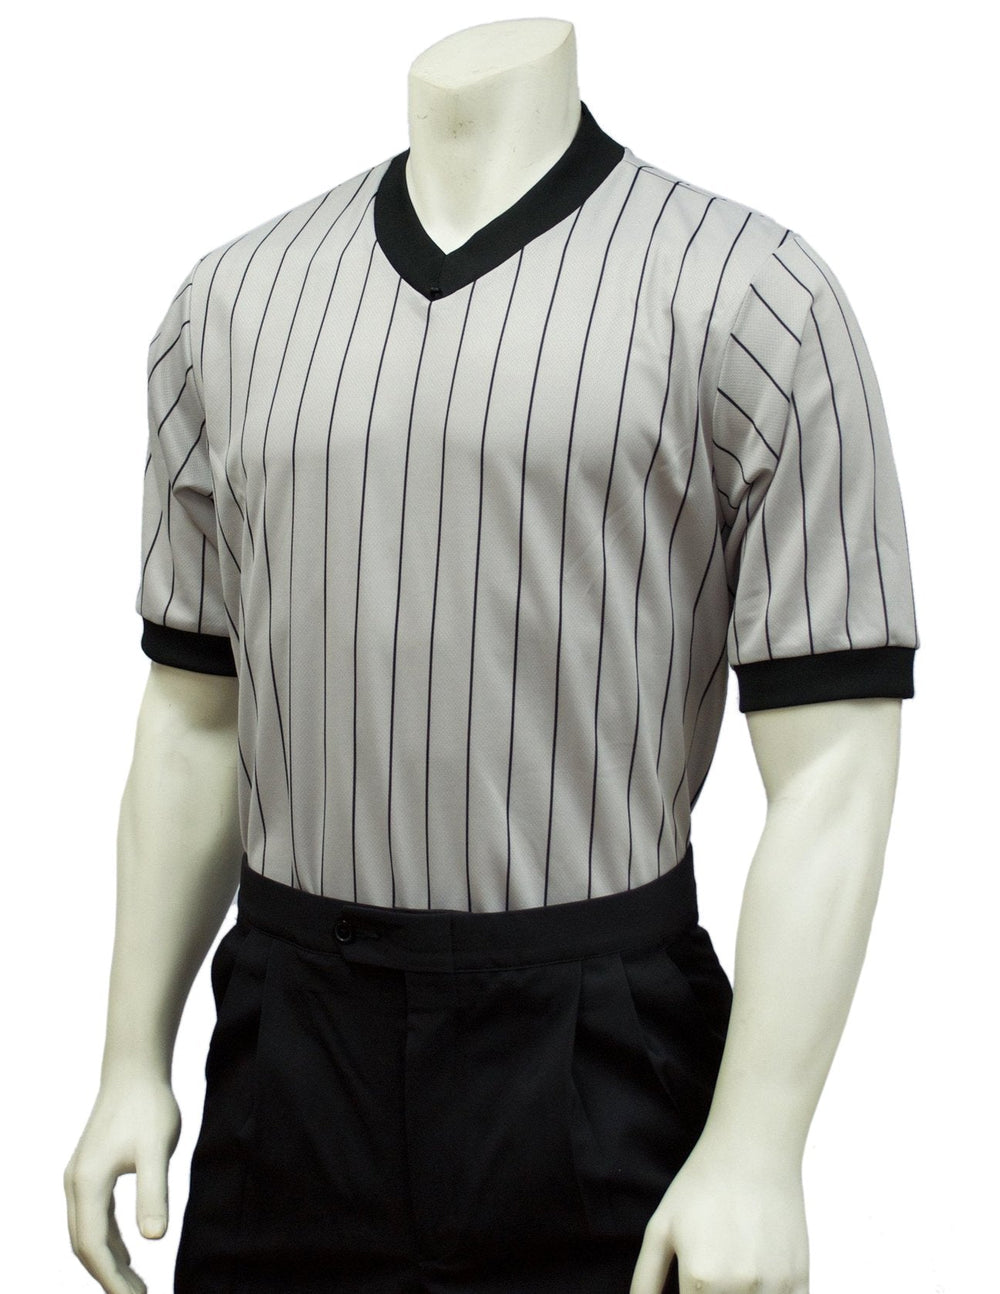 Smitty Grey Elite Perfomance Interlock V-Neck Shirt w/ Black Pinstripes